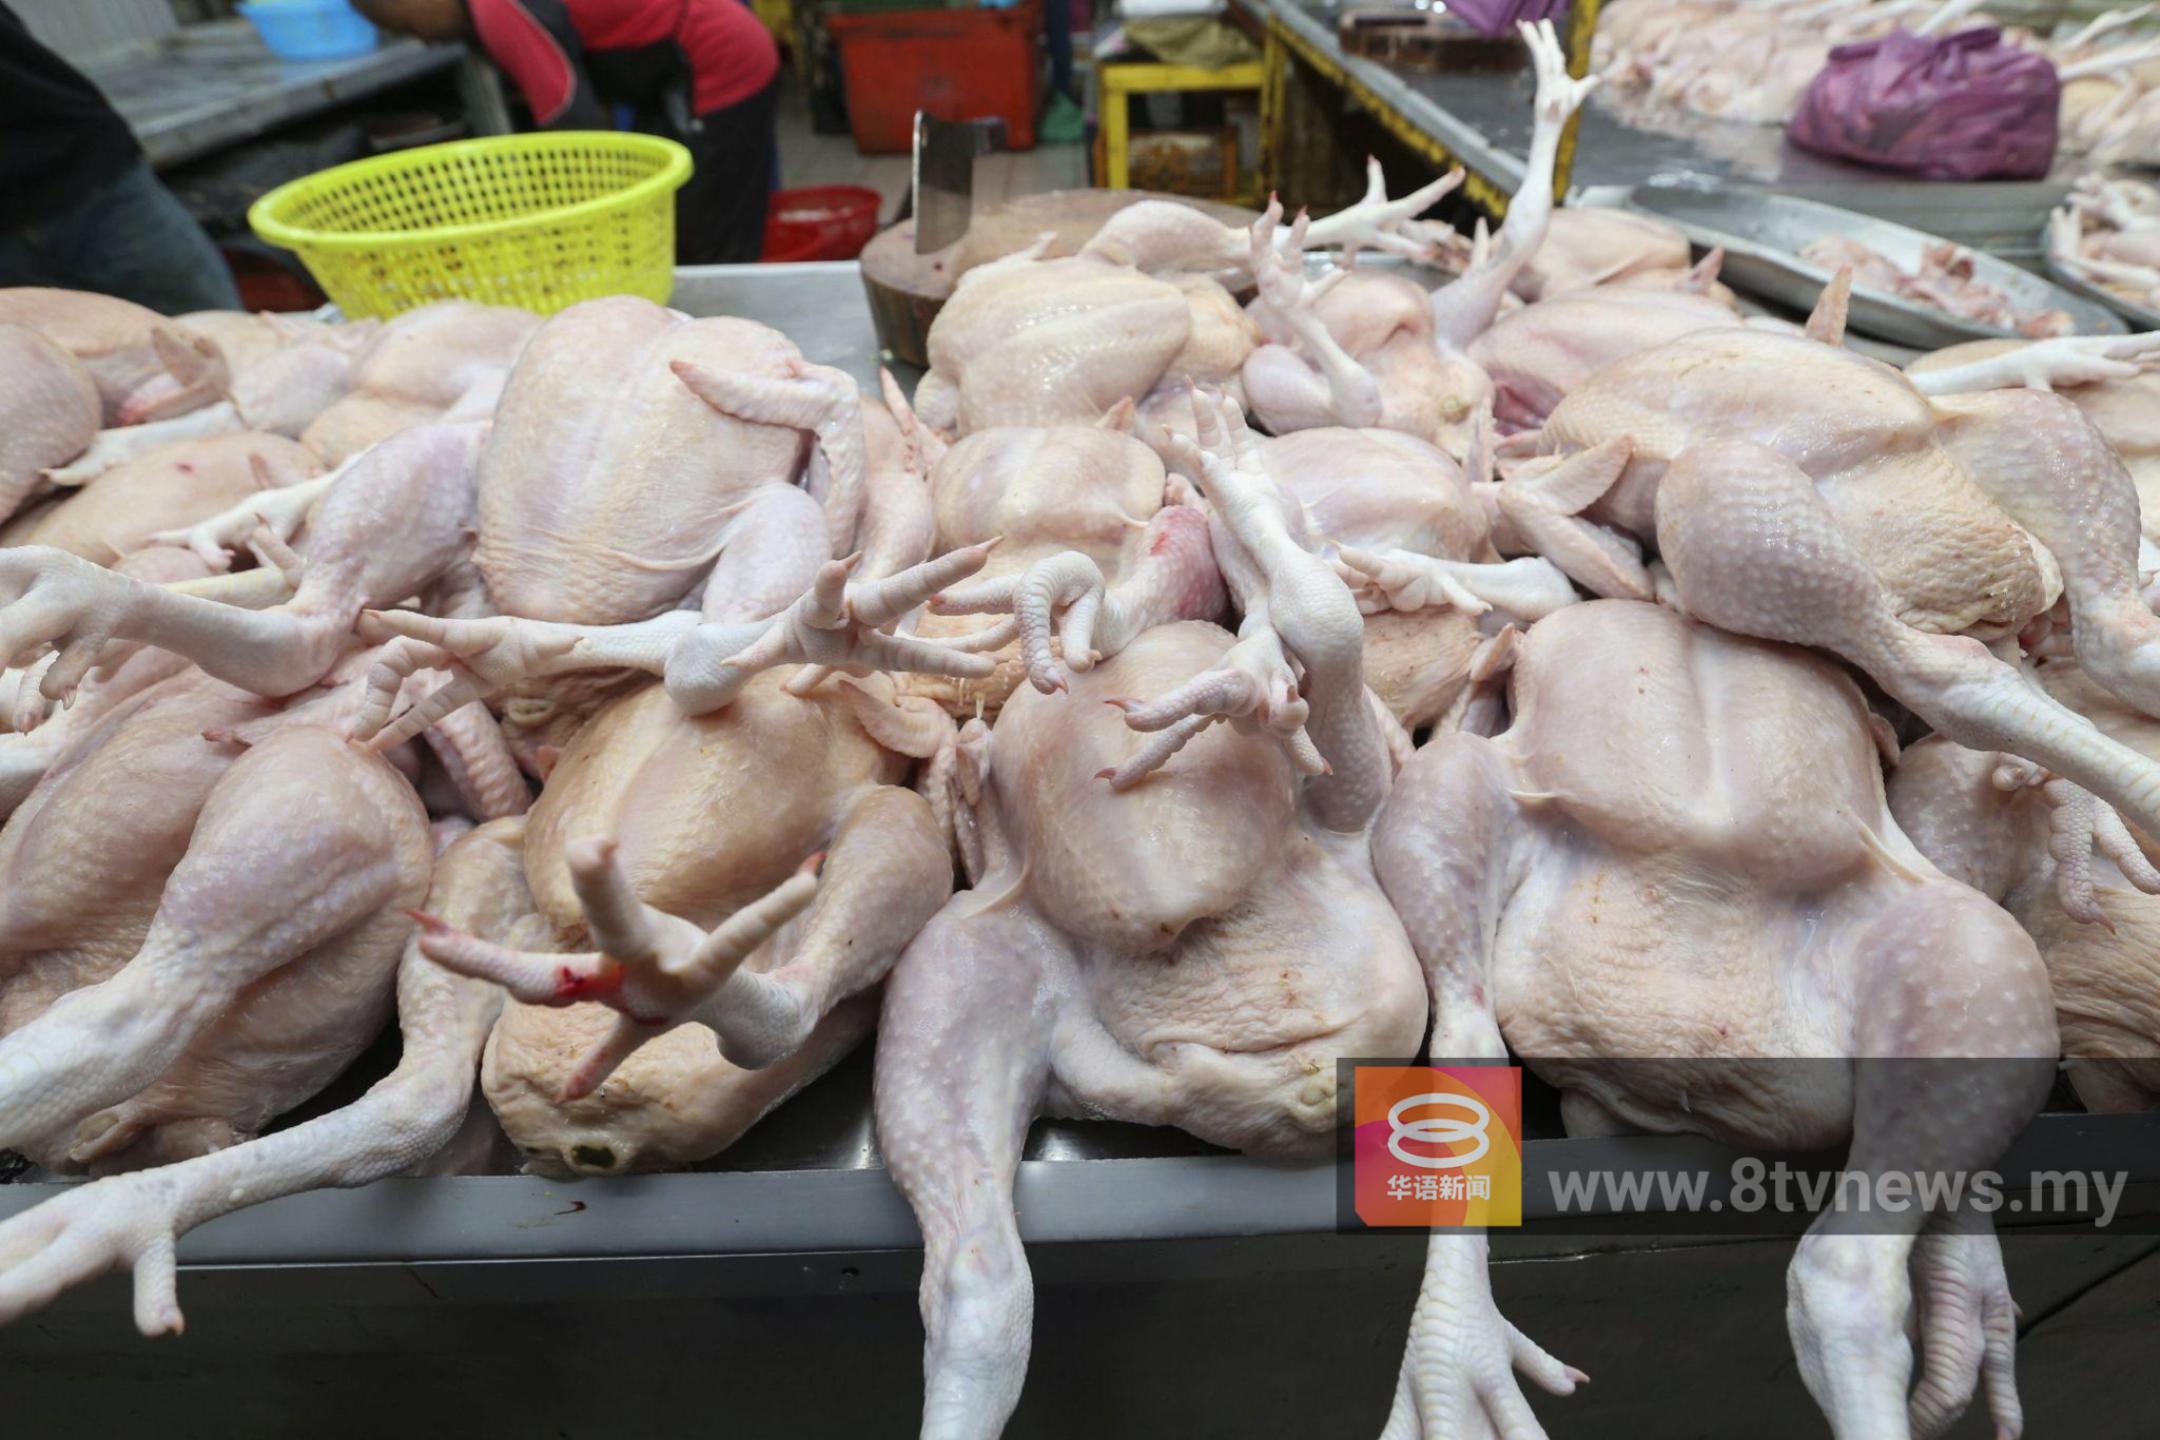 肉鸡比顶价贵80仙 霹供应商遭罚1万